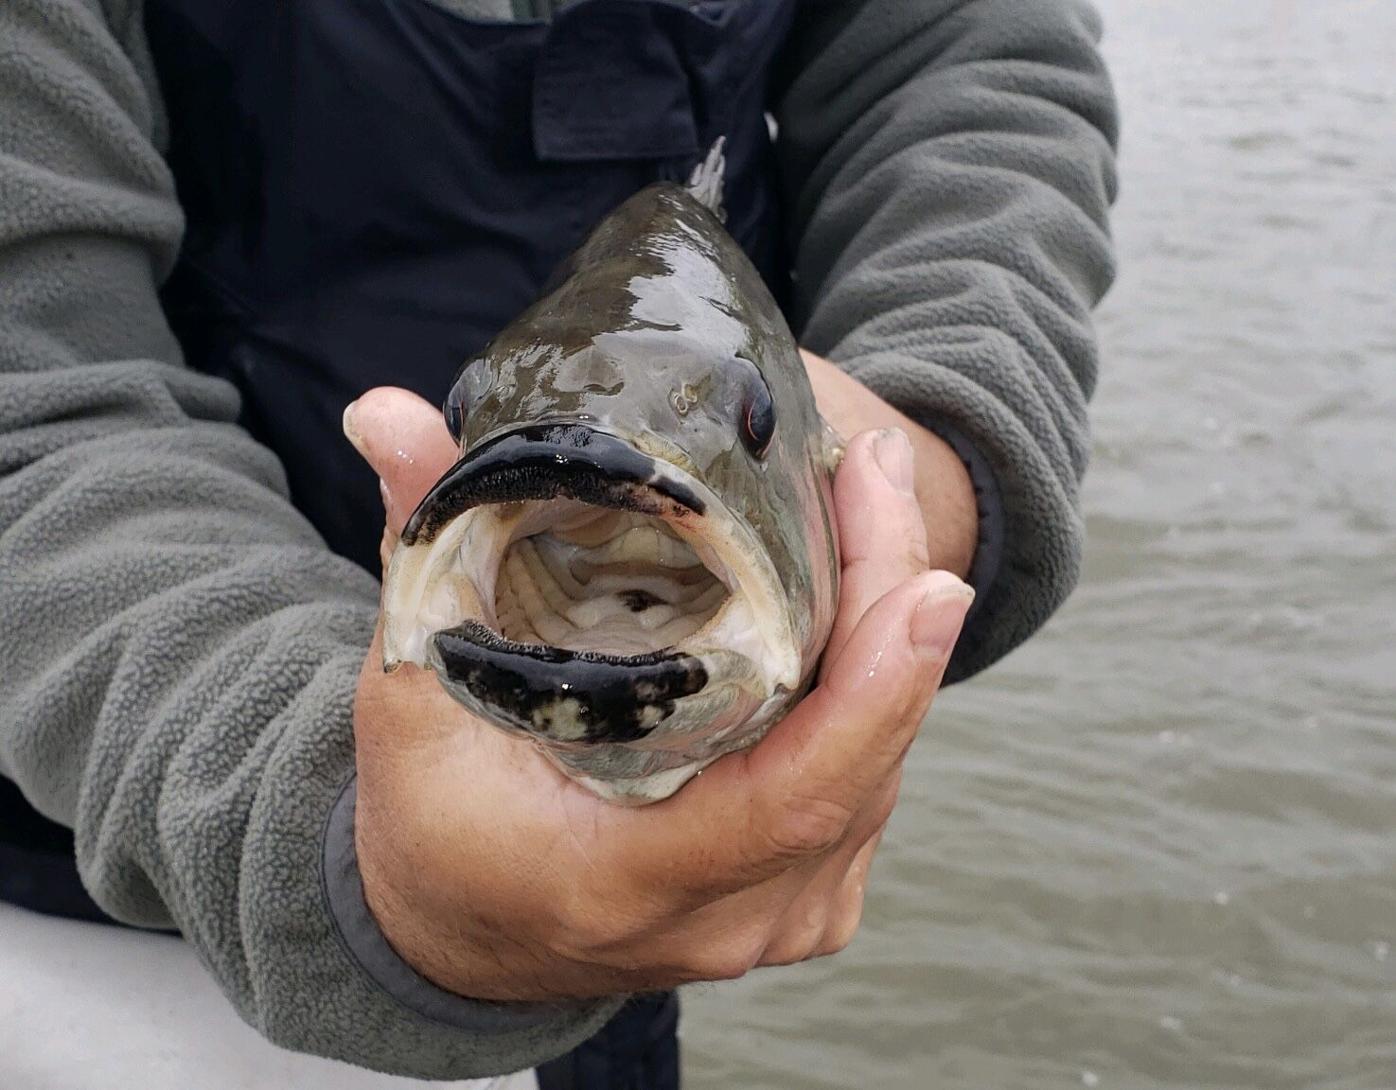 Black angler breaks barriers in pro fishing